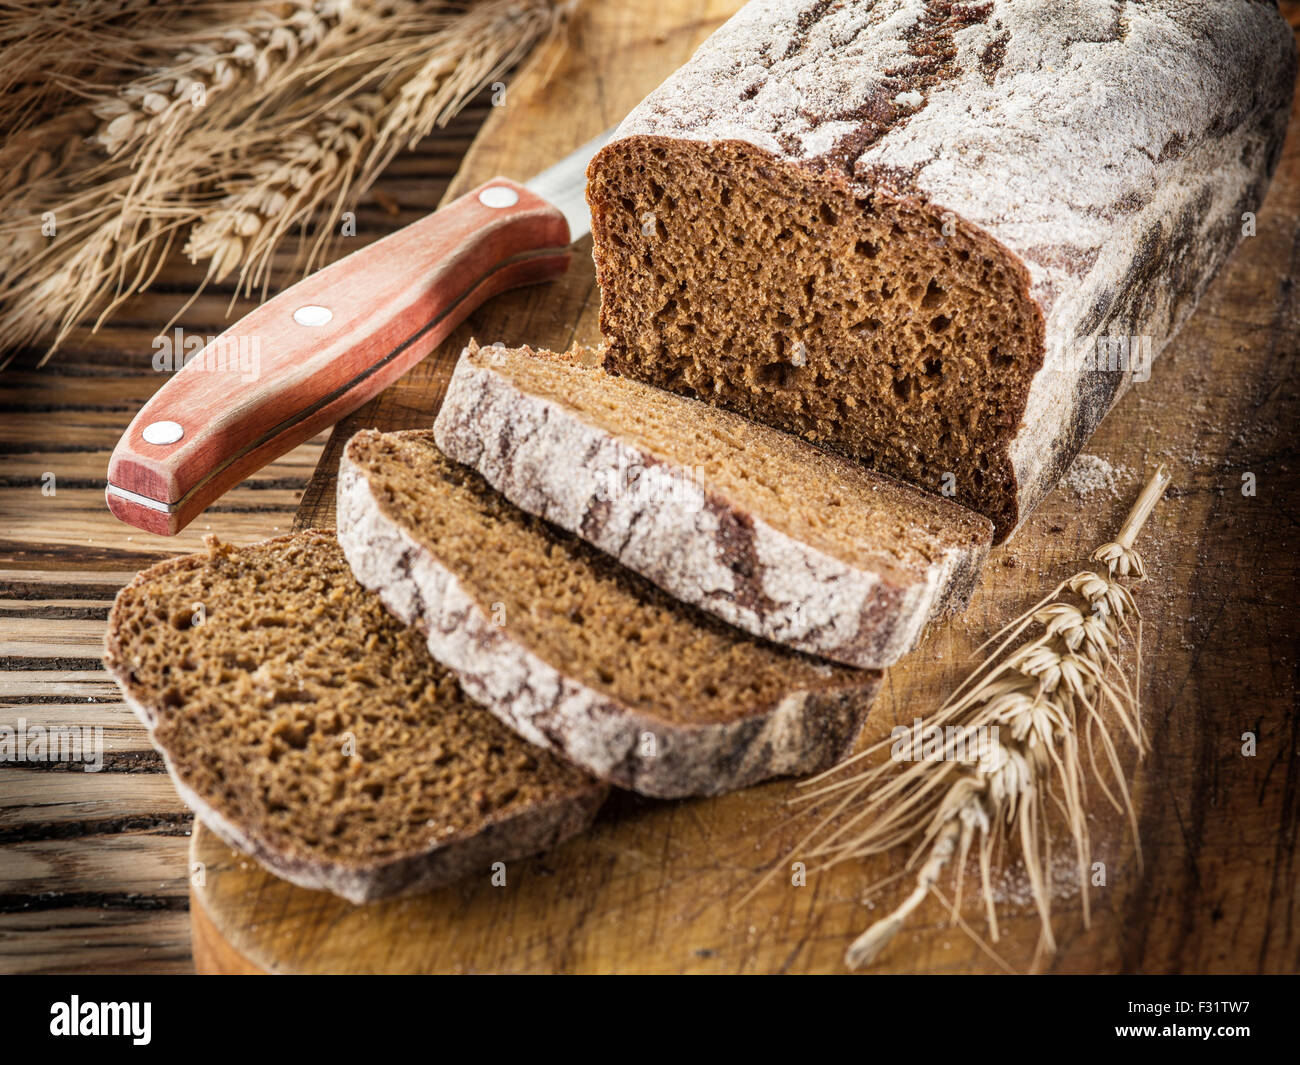 Готовая закваска для хлеба. Trio Mia ржаной хлеб. Ржаной хлеб производители. Ржаная мука хлеб. Ржаной хлеб на Руси.